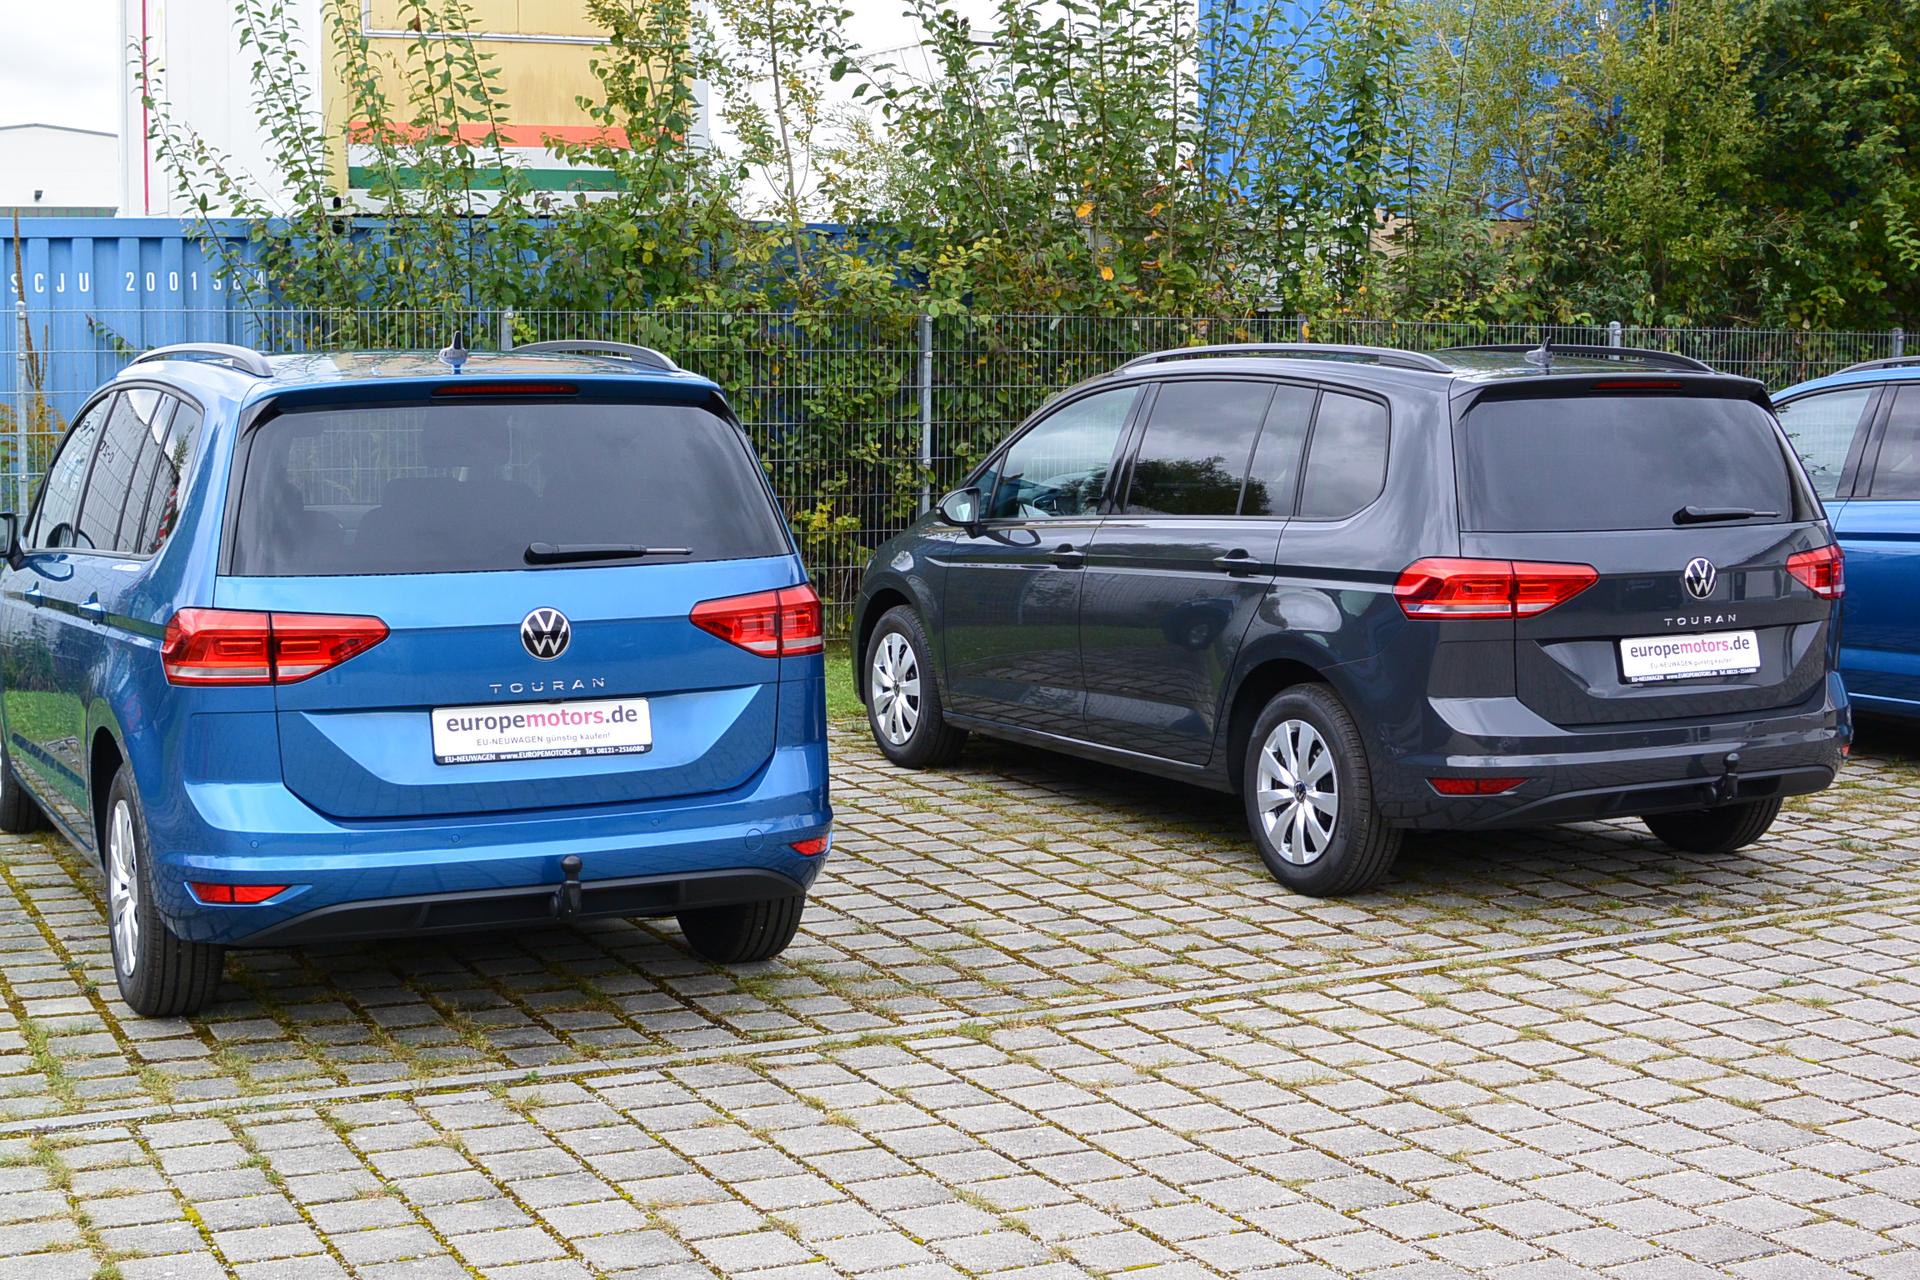 VW Touran Comfortline Reimport EU Neuwagen Tageszulassung in Neufinsing bei München